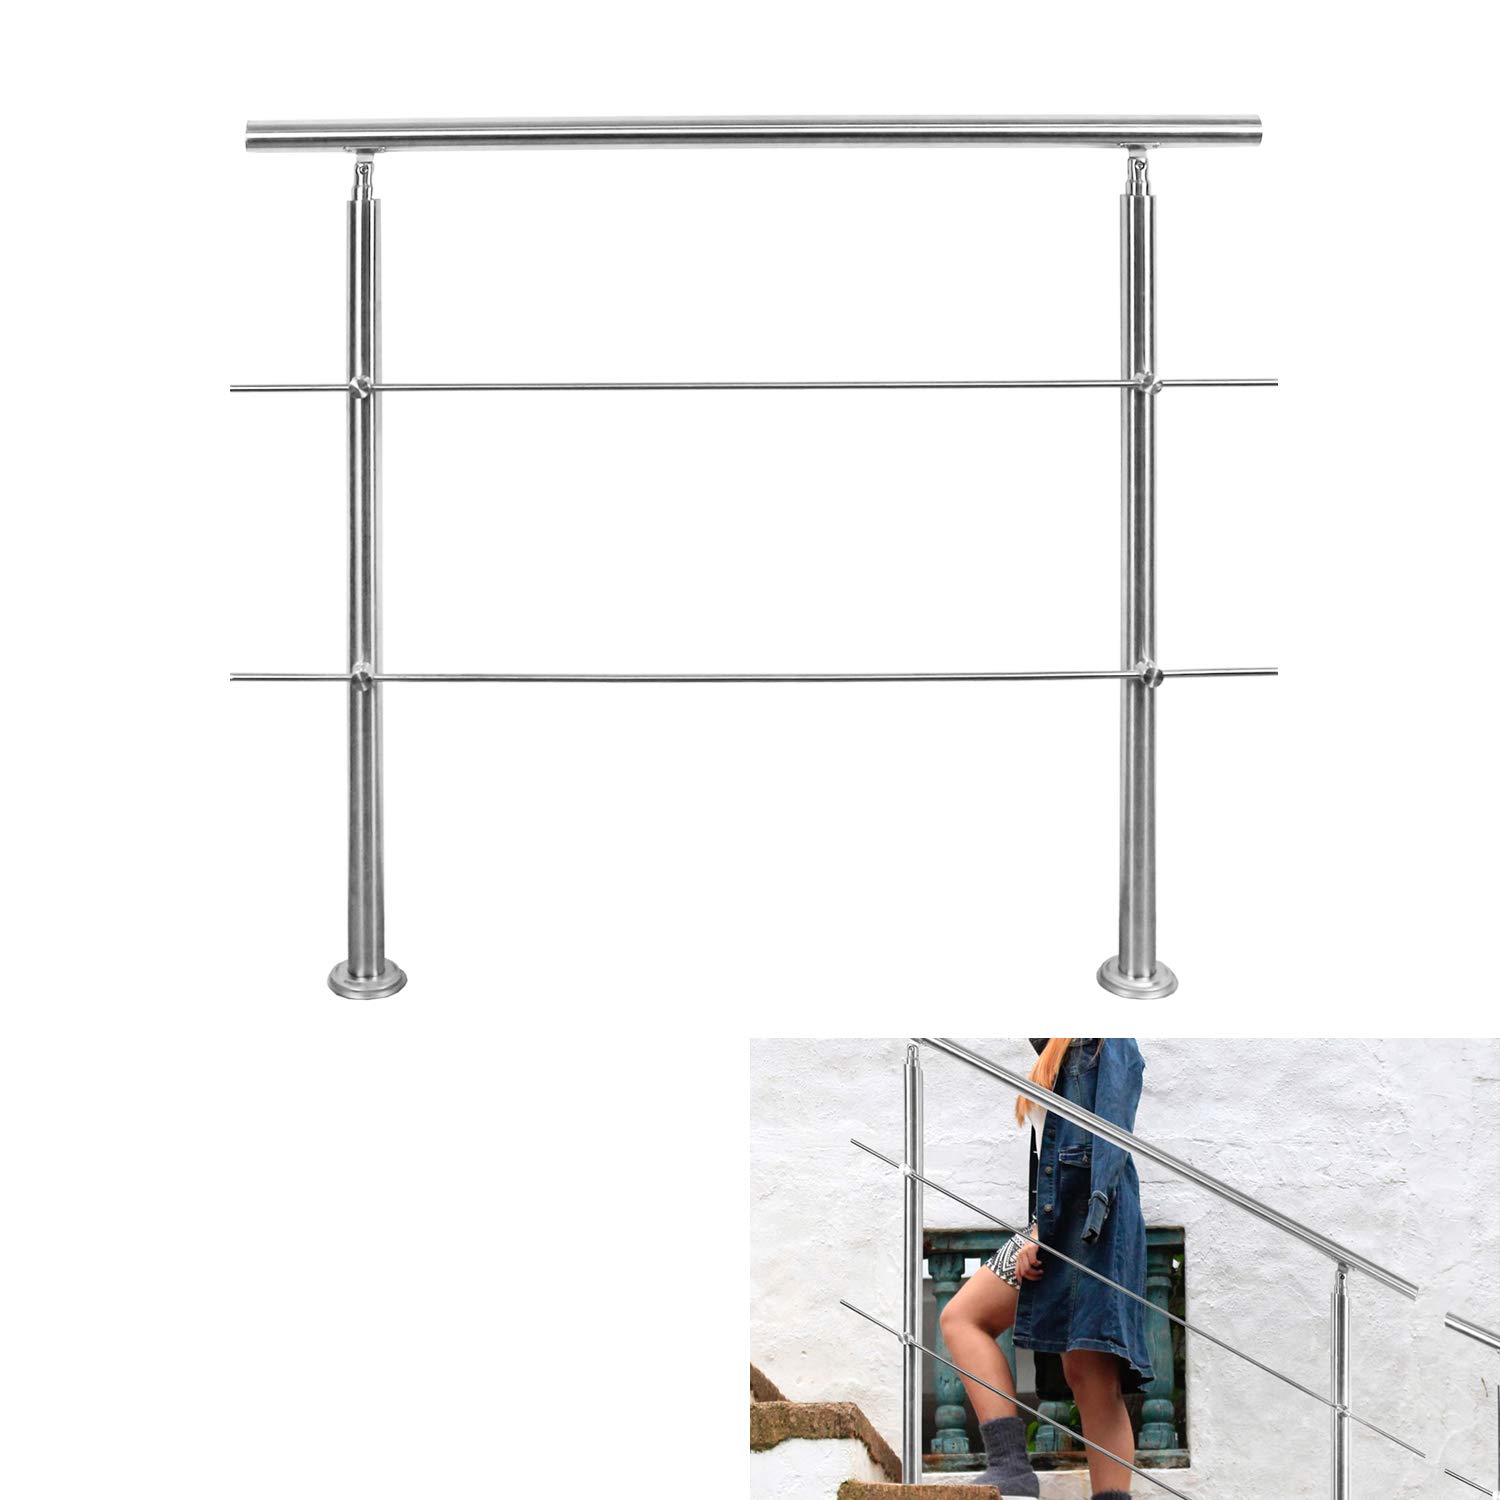 Riossad Edelstahl Handlauf Geländer für Balkon Brüstung Treppen mit/ohne Querstreben (100cm, 2 Querstreben)